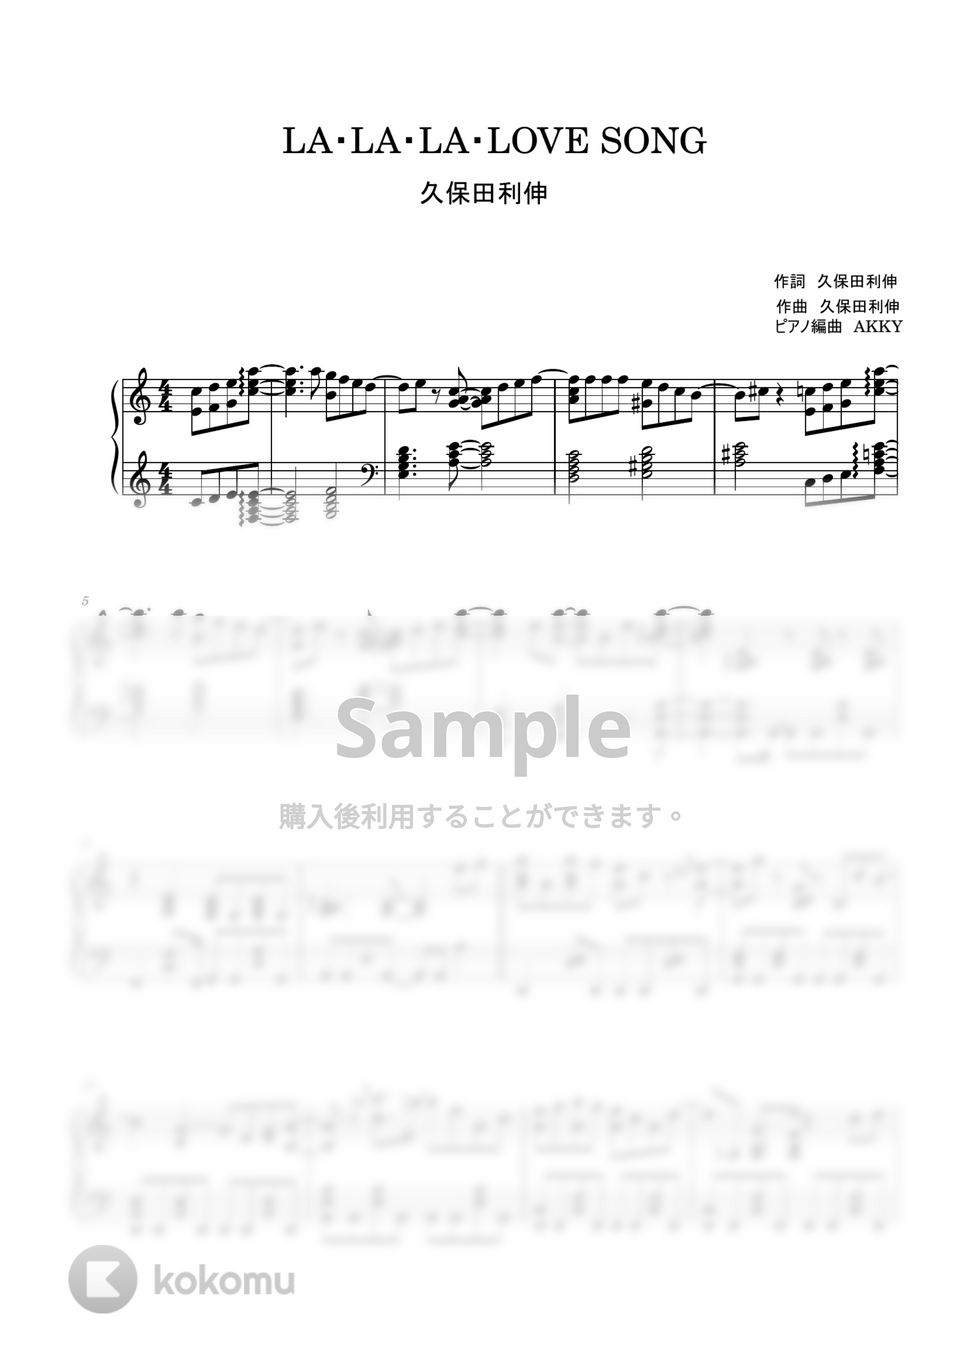 久保田利伸 - LA・LA・LA・LOVE SONG (ピアノソロ / ロングバケーション) by AKKY